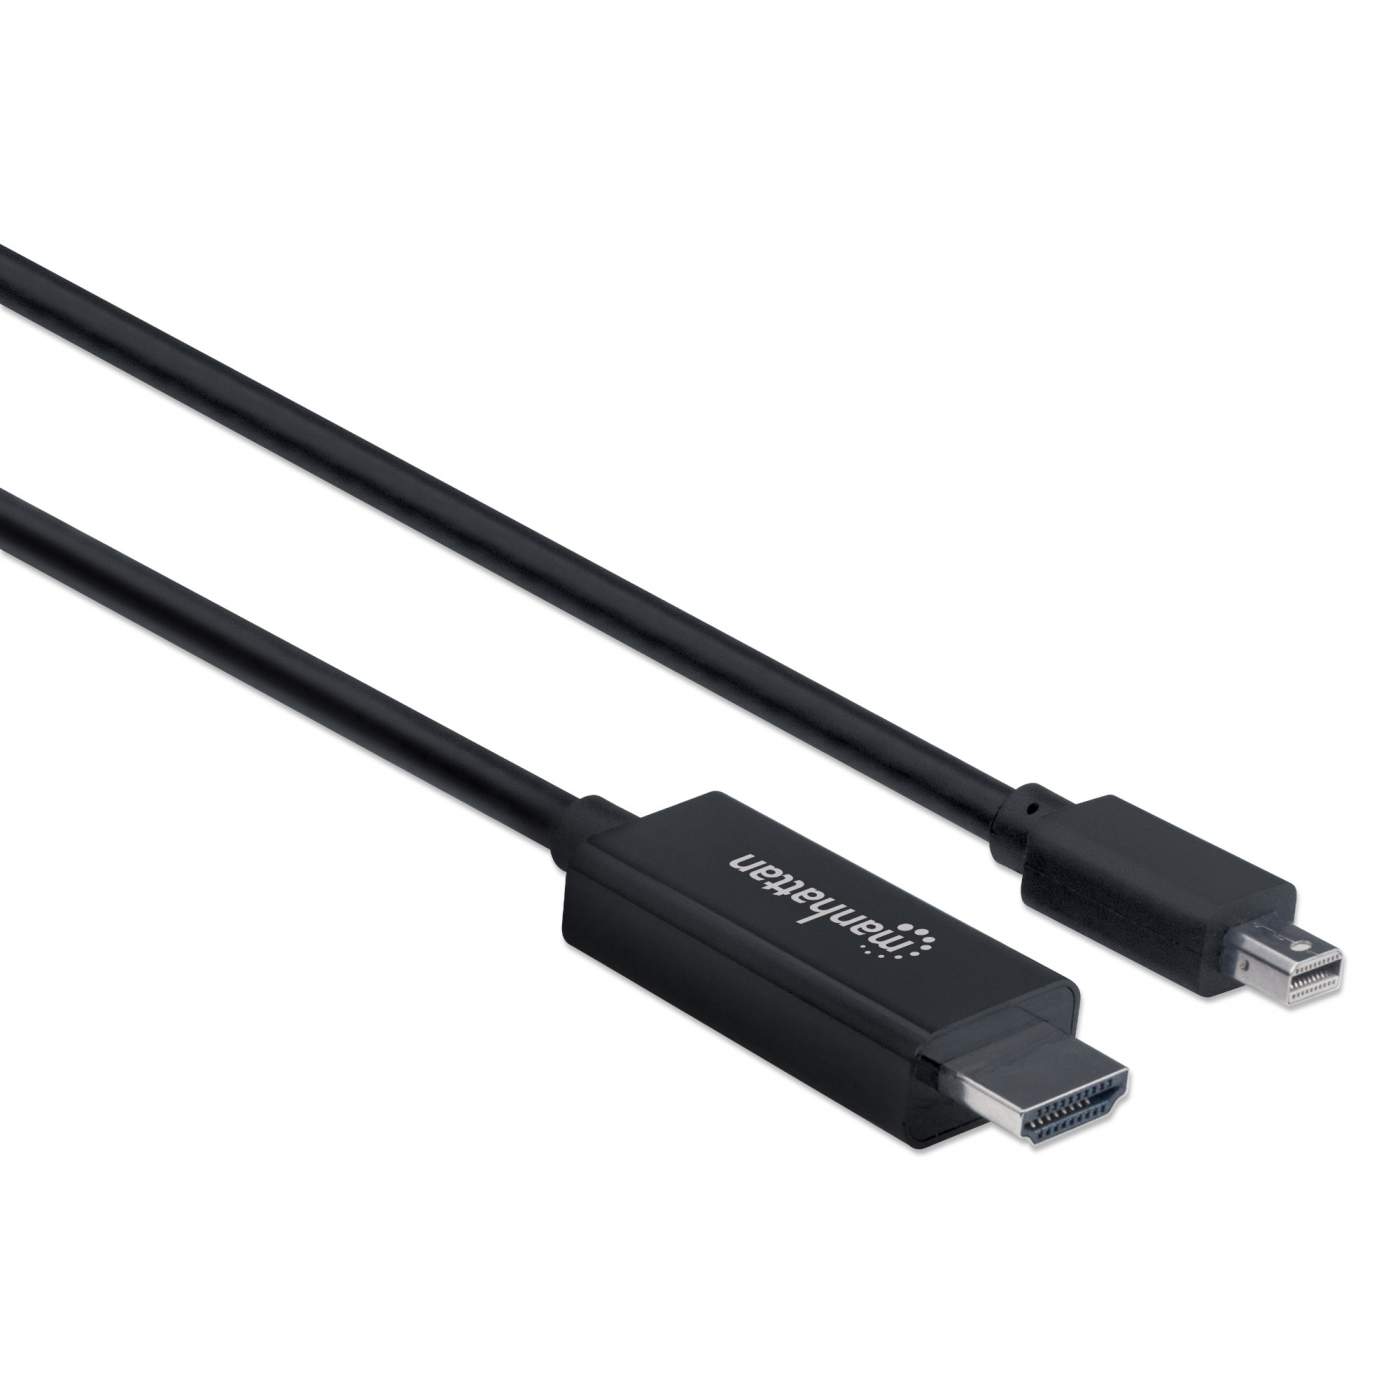 Mini DisplayPort to HDMI adatper SWV9200F/27